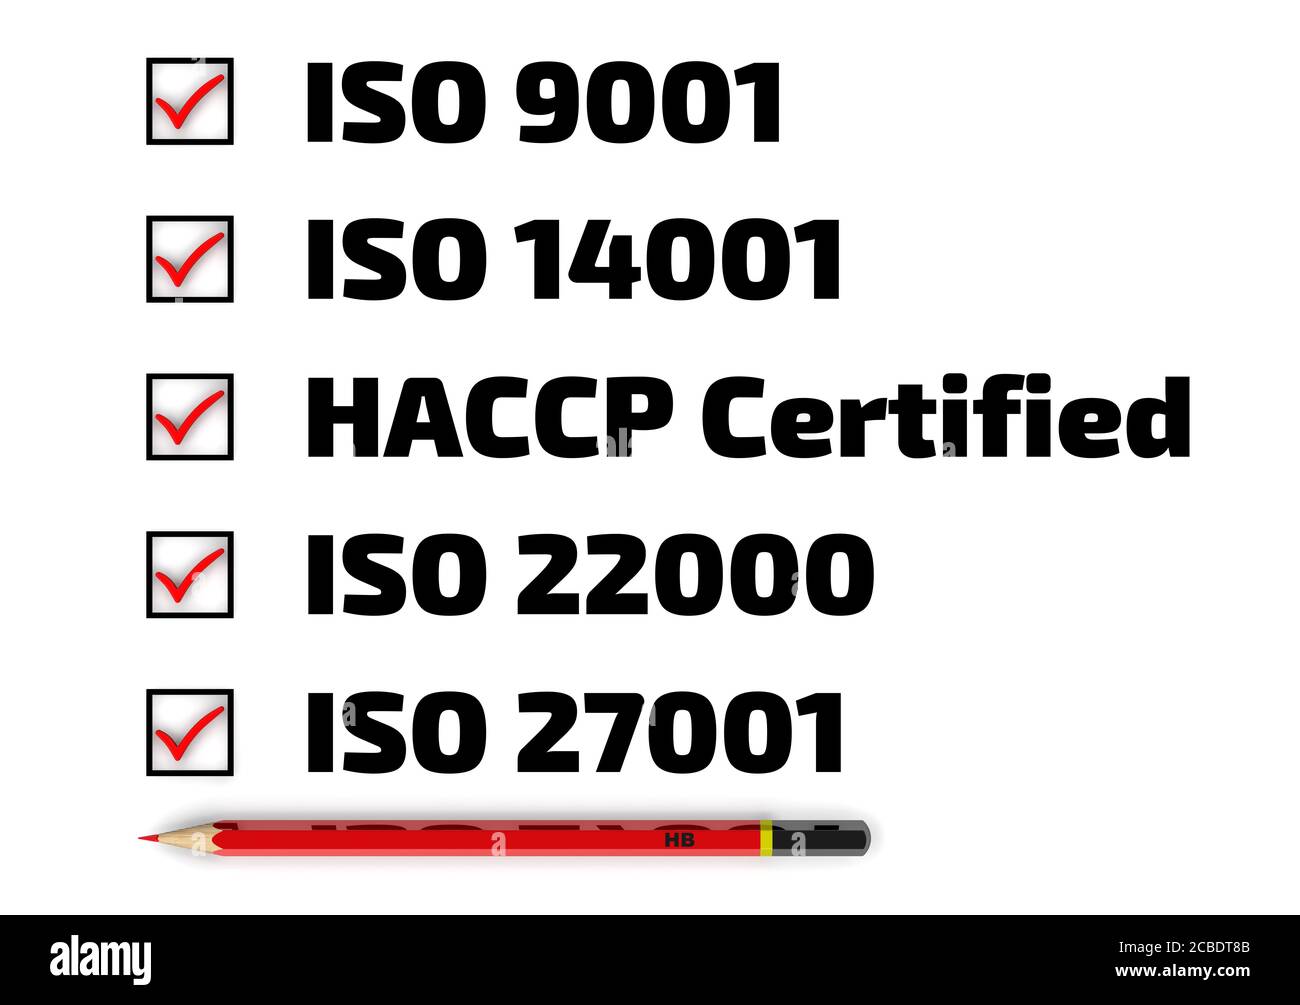 Elenco delle norme ISO: iso 9001; iso 14001; haccp; iso 22000; iso 27001. Matita rossa e lista di controllo con segni rossi Foto Stock